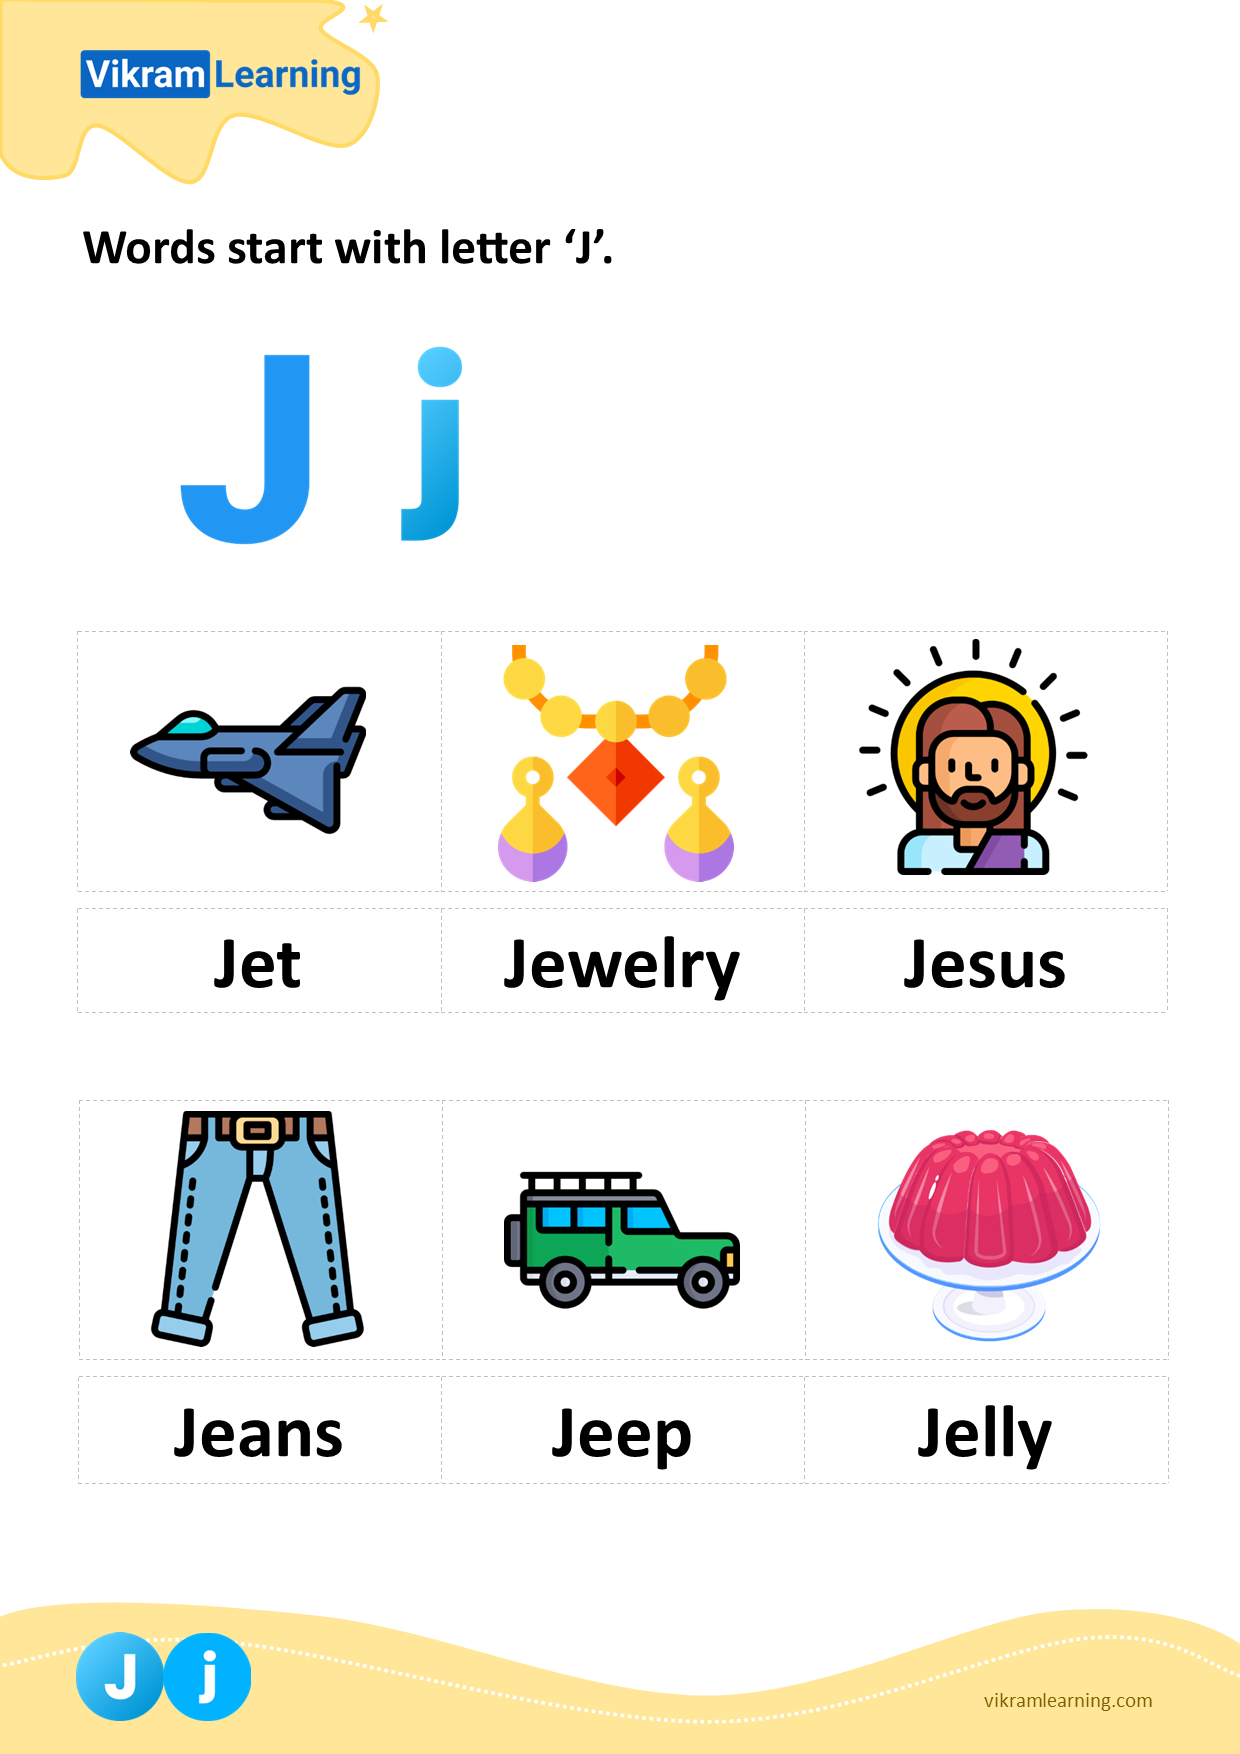 Download words start with letter 'j' worksheets | vikramlearning.com